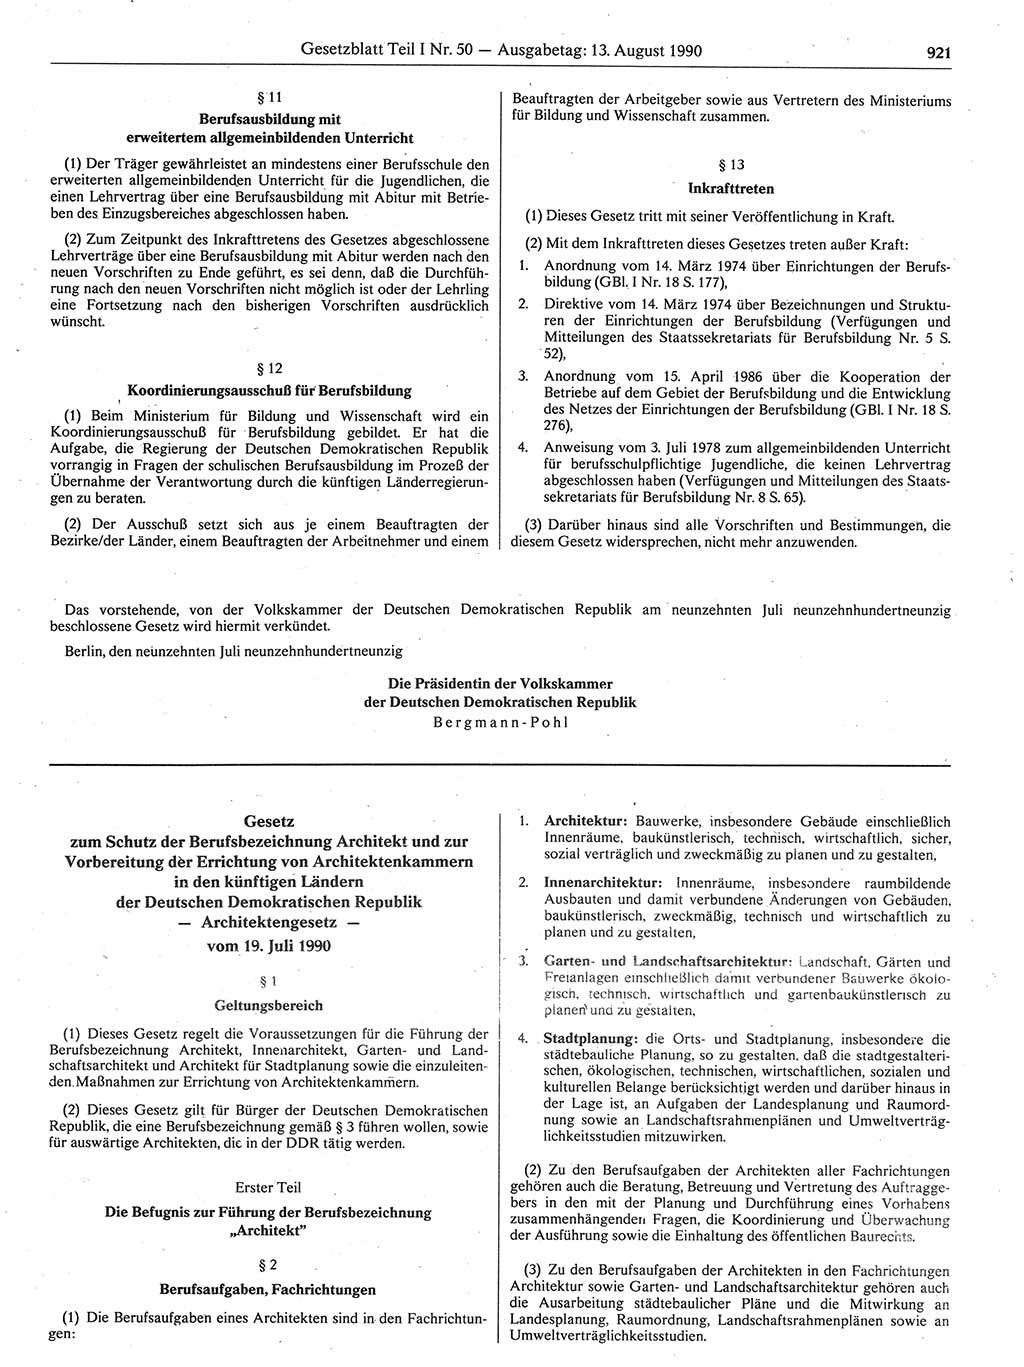 Gesetzblatt (GBl.) der Deutschen Demokratischen Republik (DDR) Teil Ⅰ 1990, Seite 921 (GBl. DDR Ⅰ 1990, S. 921)